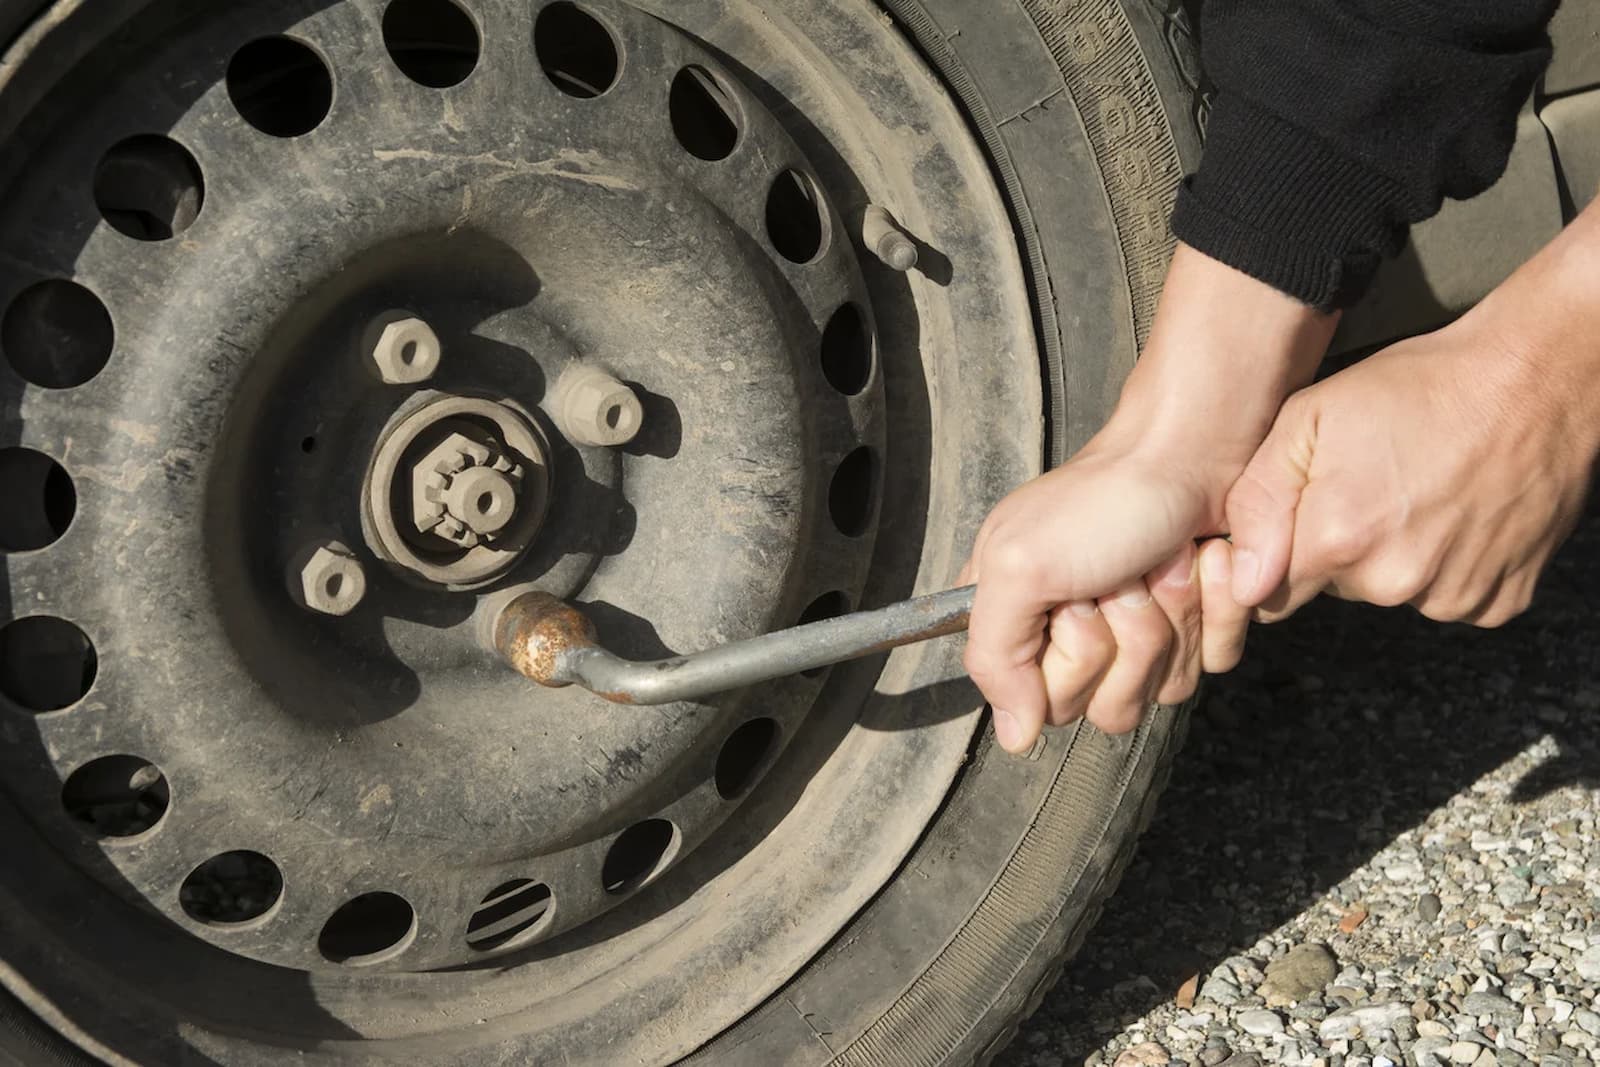 Como trocar o pneu do carro